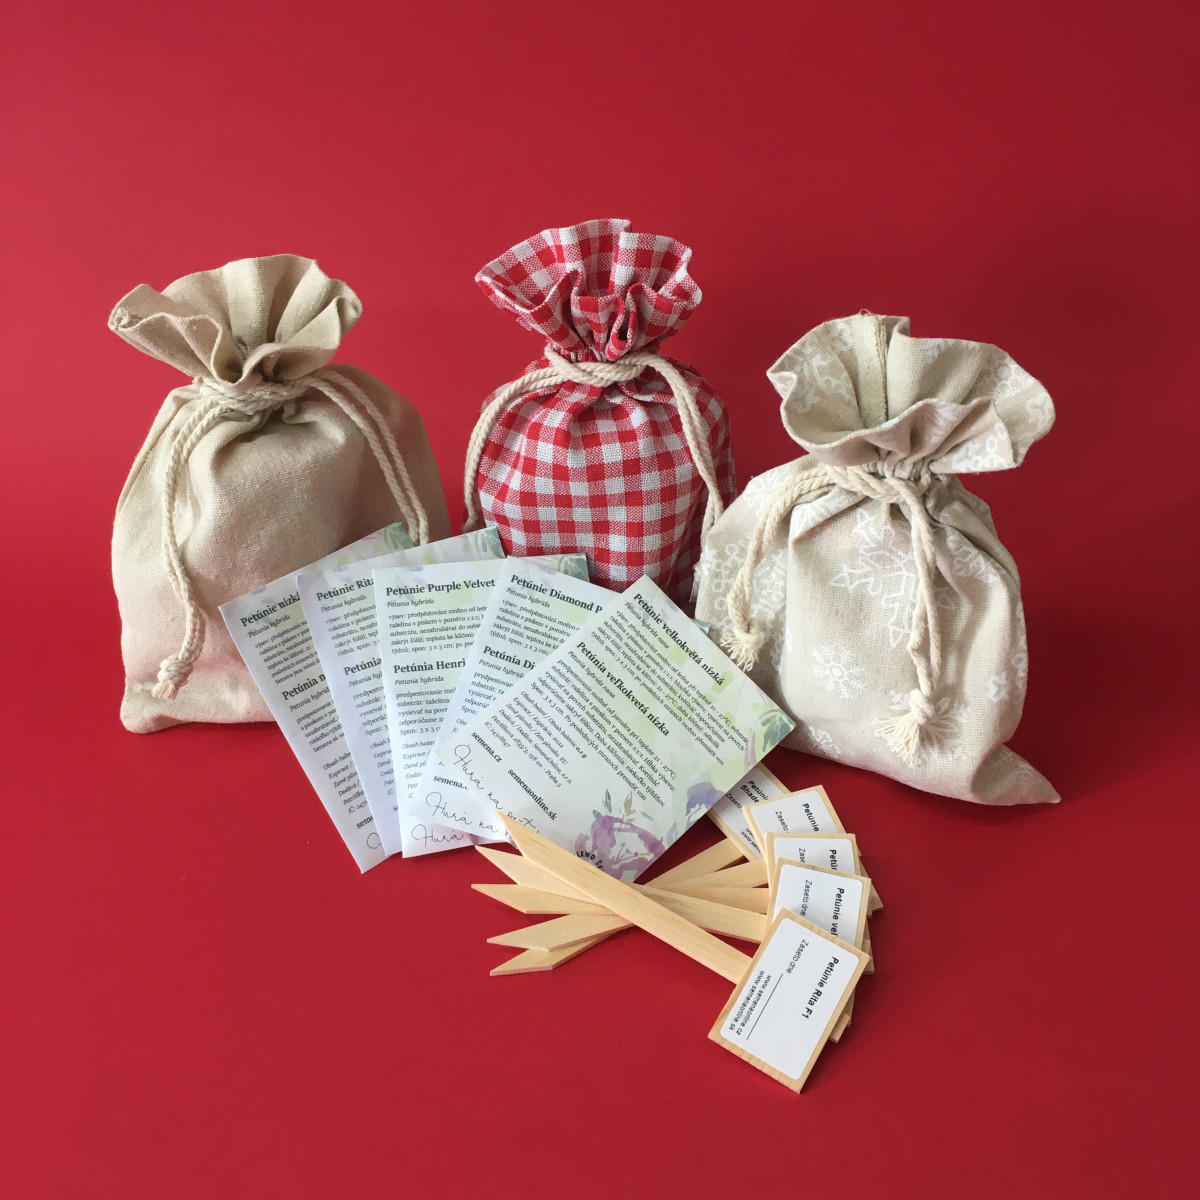 Dárkový balíček semen petúnií - zdarma dárkové balení